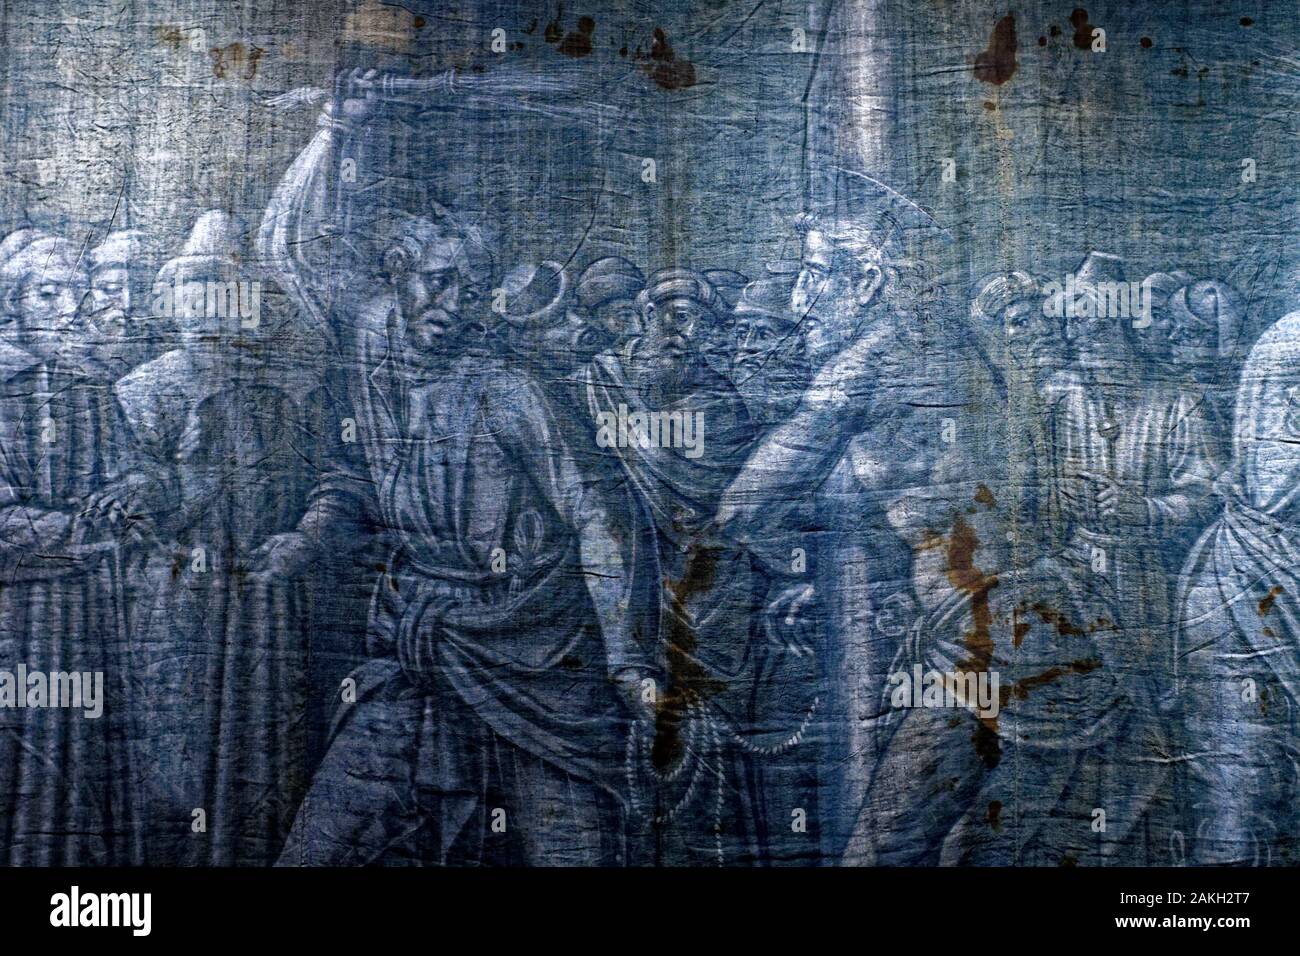 In Italia, la Liguria, Genova, Museo Diocesano (museo diocesano) nel  chiostro dei Canonici, BLU di Genova, teli della Passione raccolta, pittori  genovesi hanno dipinto la passione di Gesù nel 1538 sul tessuto